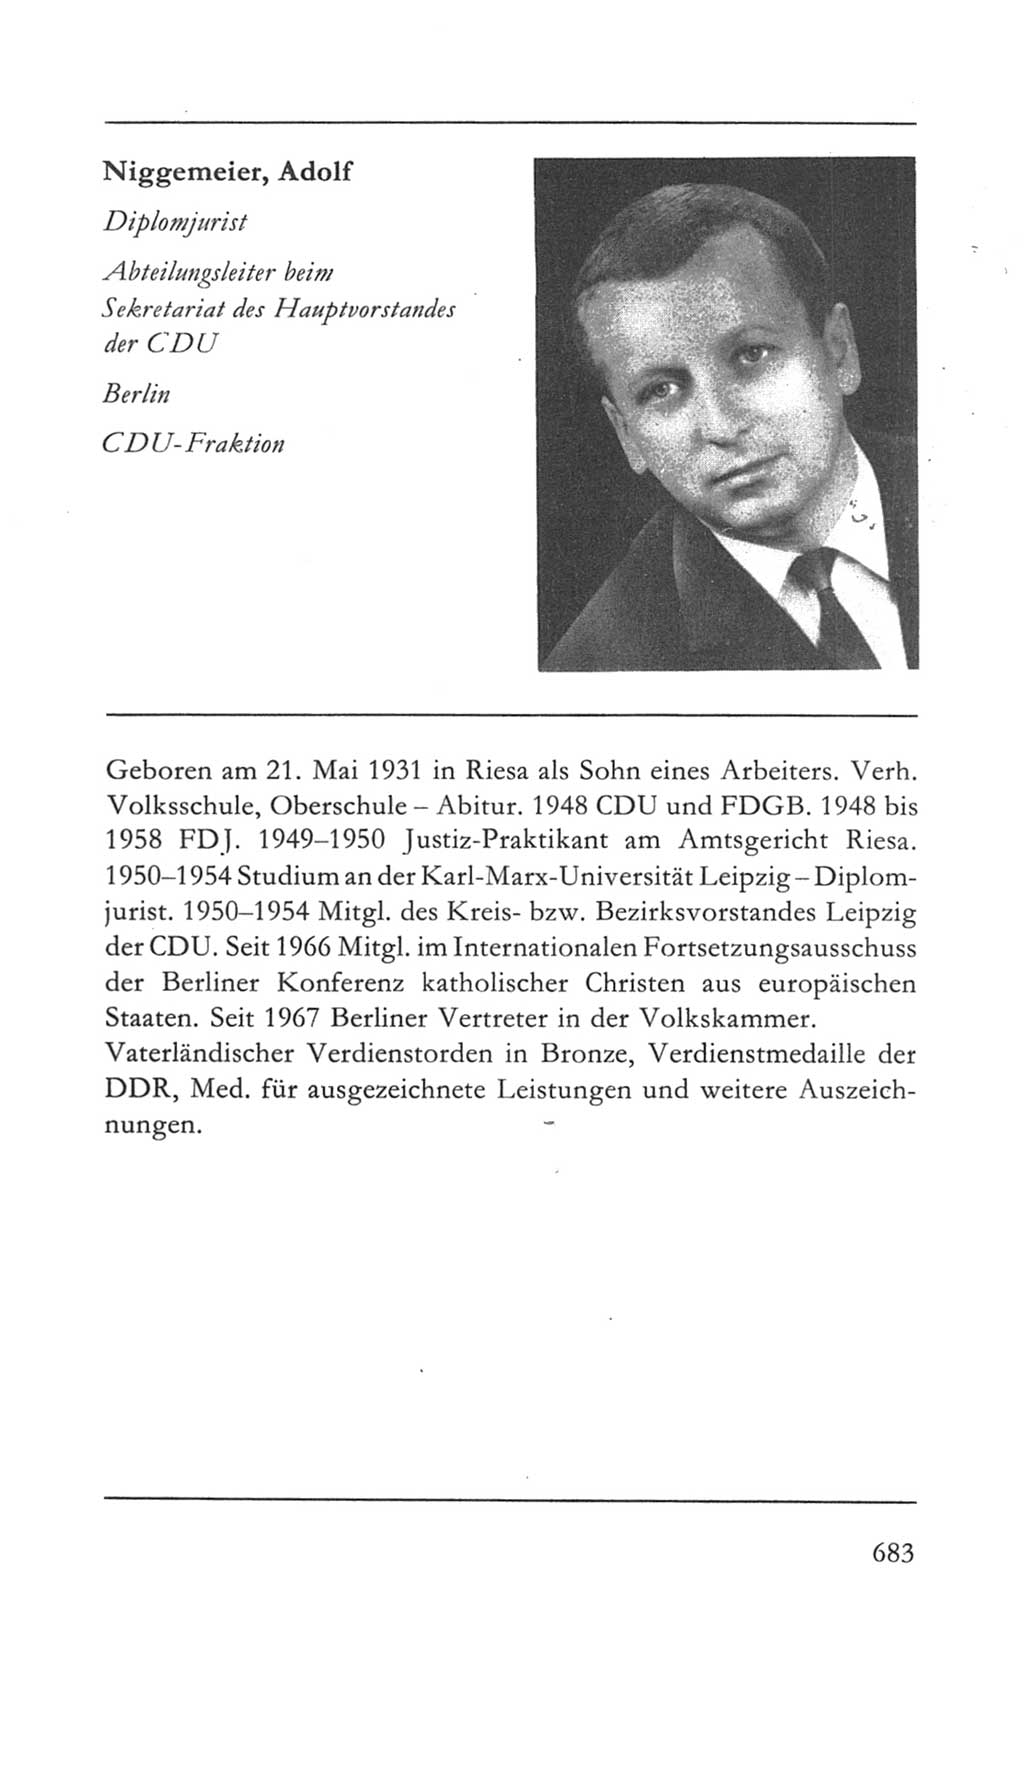 Volkskammer (VK) der Deutschen Demokratischen Republik (DDR) 5. Wahlperiode 1967-1971, Seite 683 (VK. DDR 5. WP. 1967-1971, S. 683)